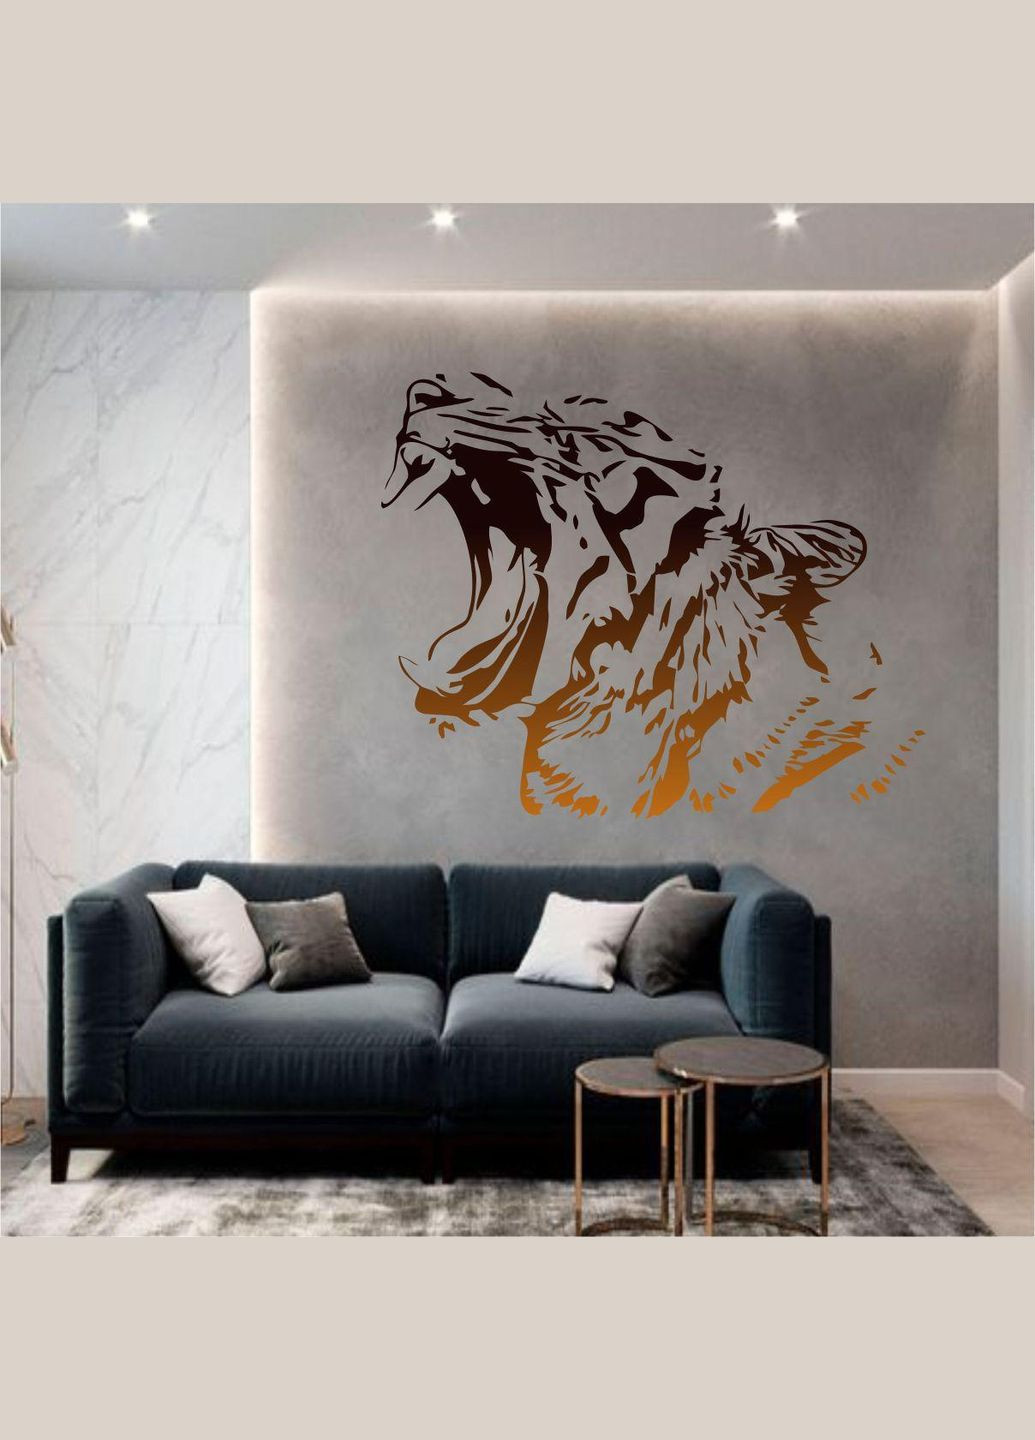 Трафарет для фарбування, Тигр, одноразовий із самоклеючої плівки 95 х 110 см Декоинт (278289359)